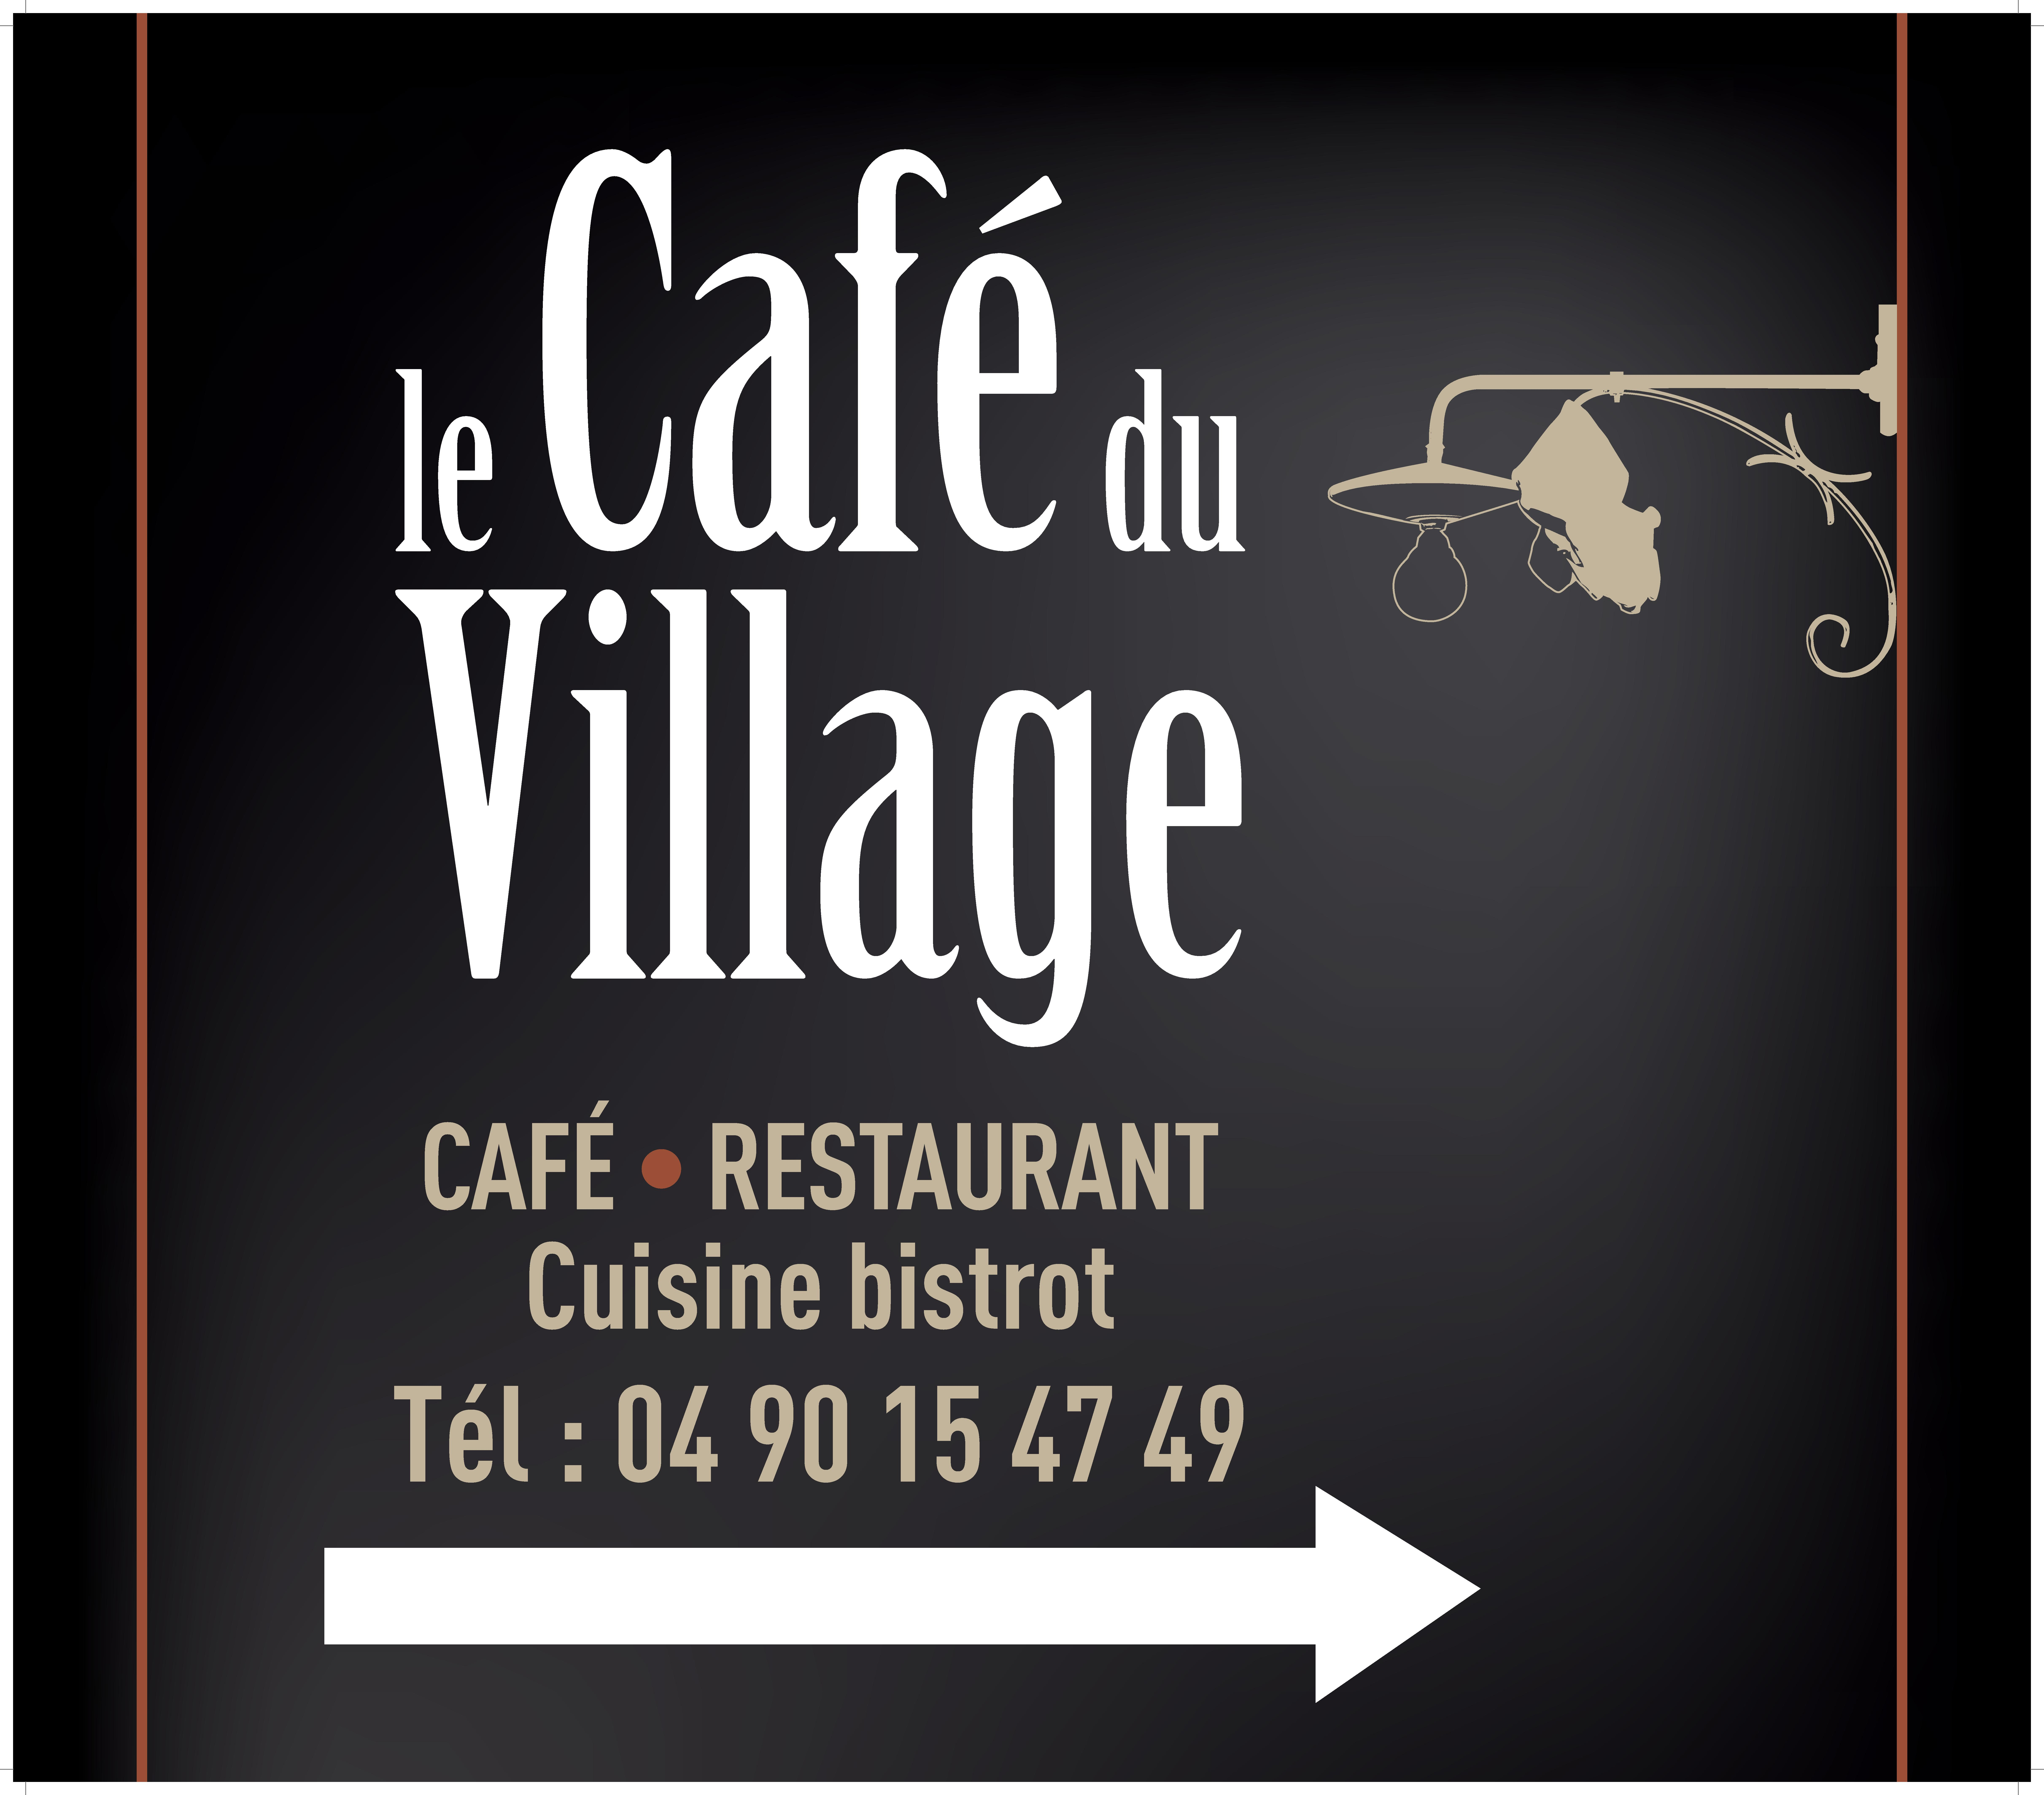 Le Cafe du Village